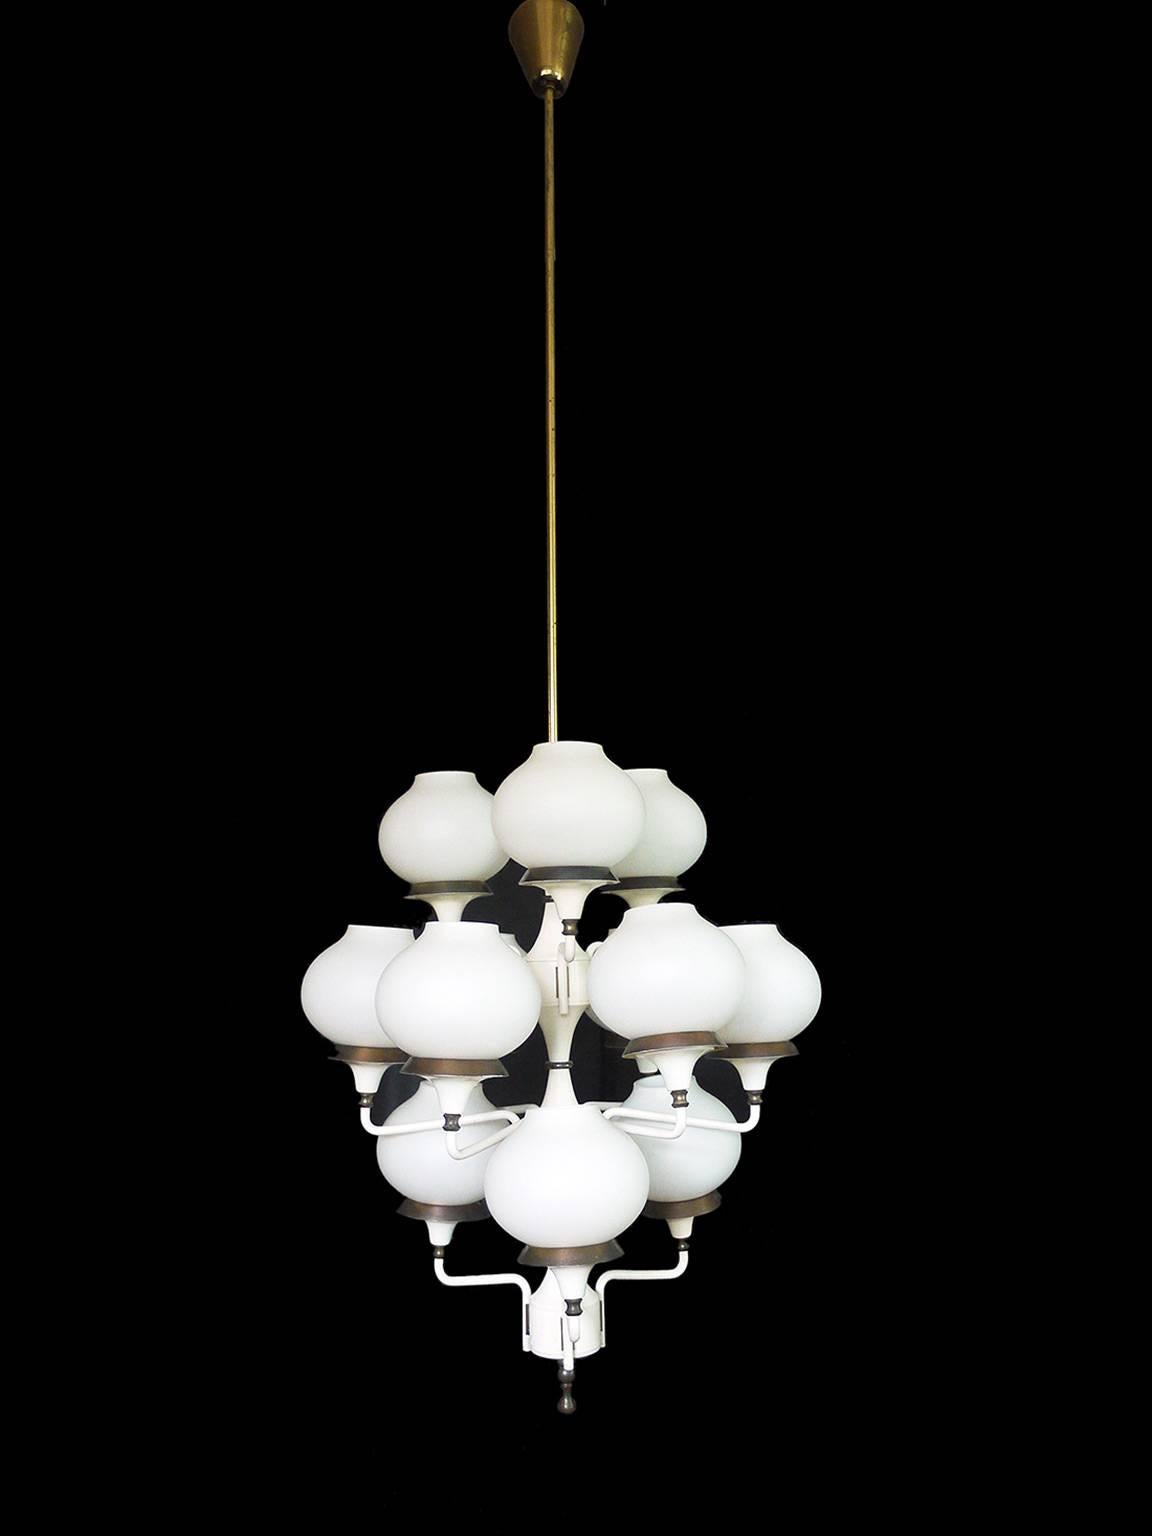 Elégant lustre avec 12 globes en verre satiné superposés sur une structure en métal laqué blanc avec des finitions en laiton. Fabriqué par Hans-Agne Jakobsson, Suède, dans les années 1950

Design : Hans-Agne Jakobsson. 
Modèle : Tulipan, Spoutnik.